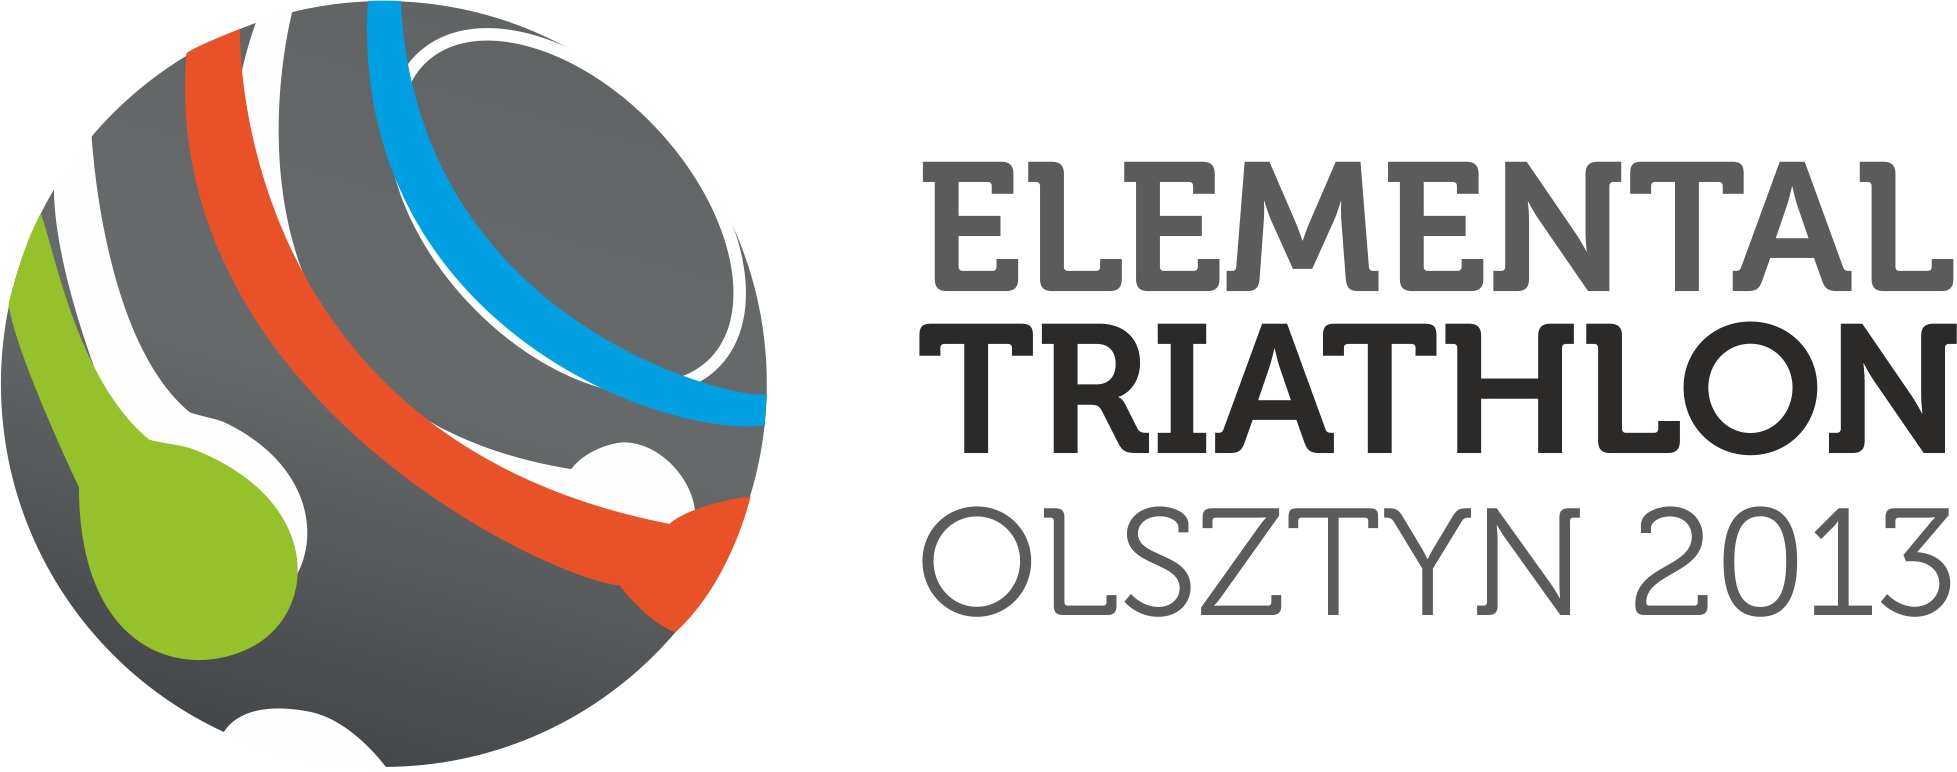 eto2013 logo